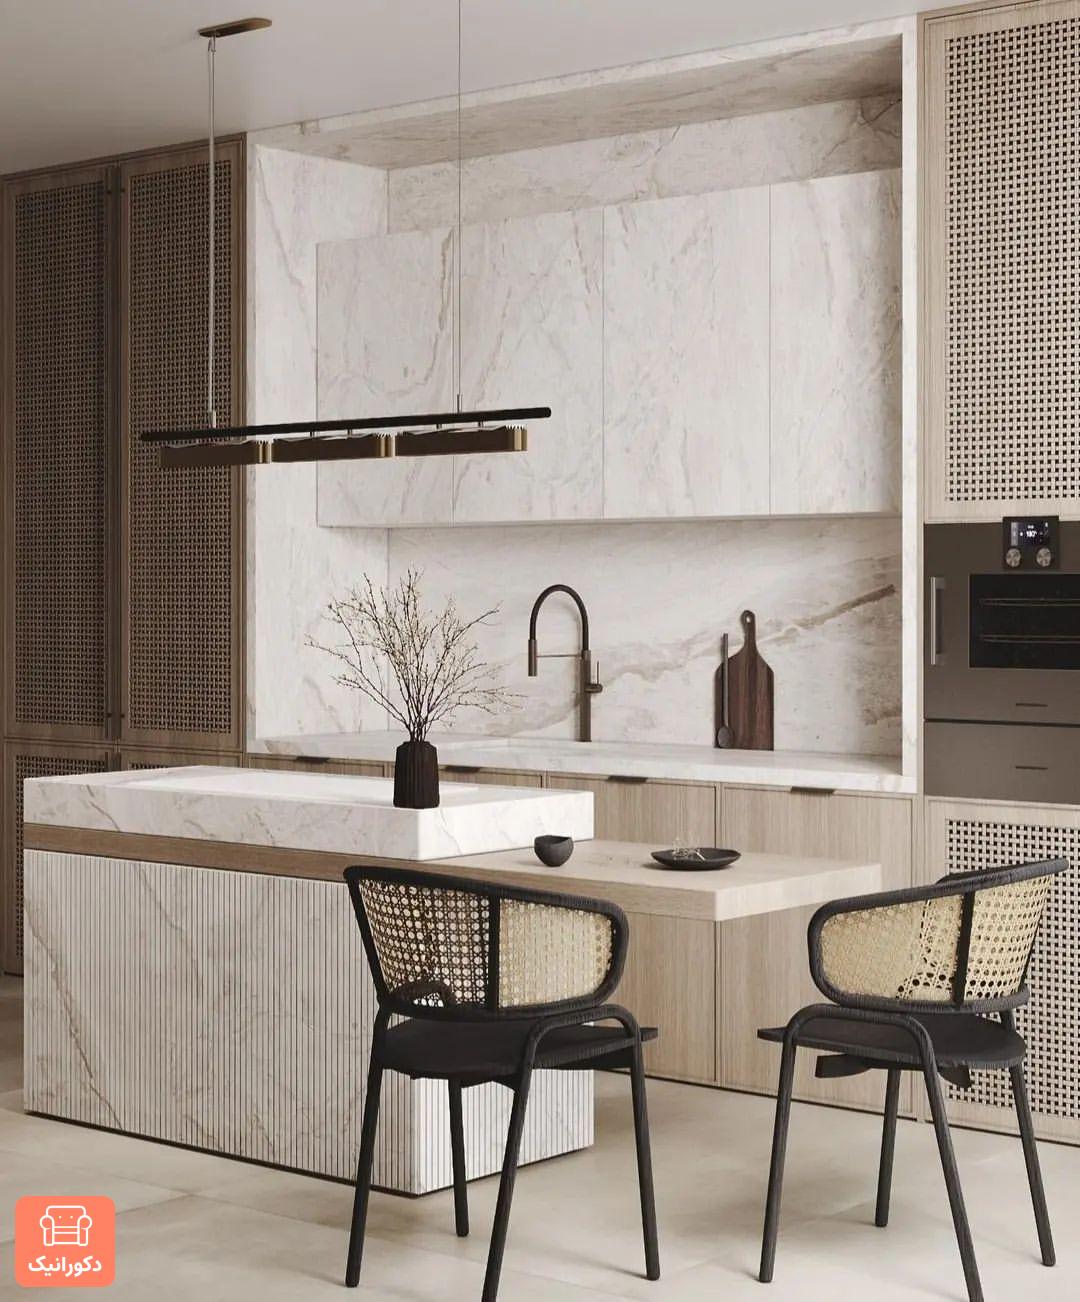 زیبایی دکوراسیون آشپزخانه با کابینت هایگلاس سفید قهوه ای